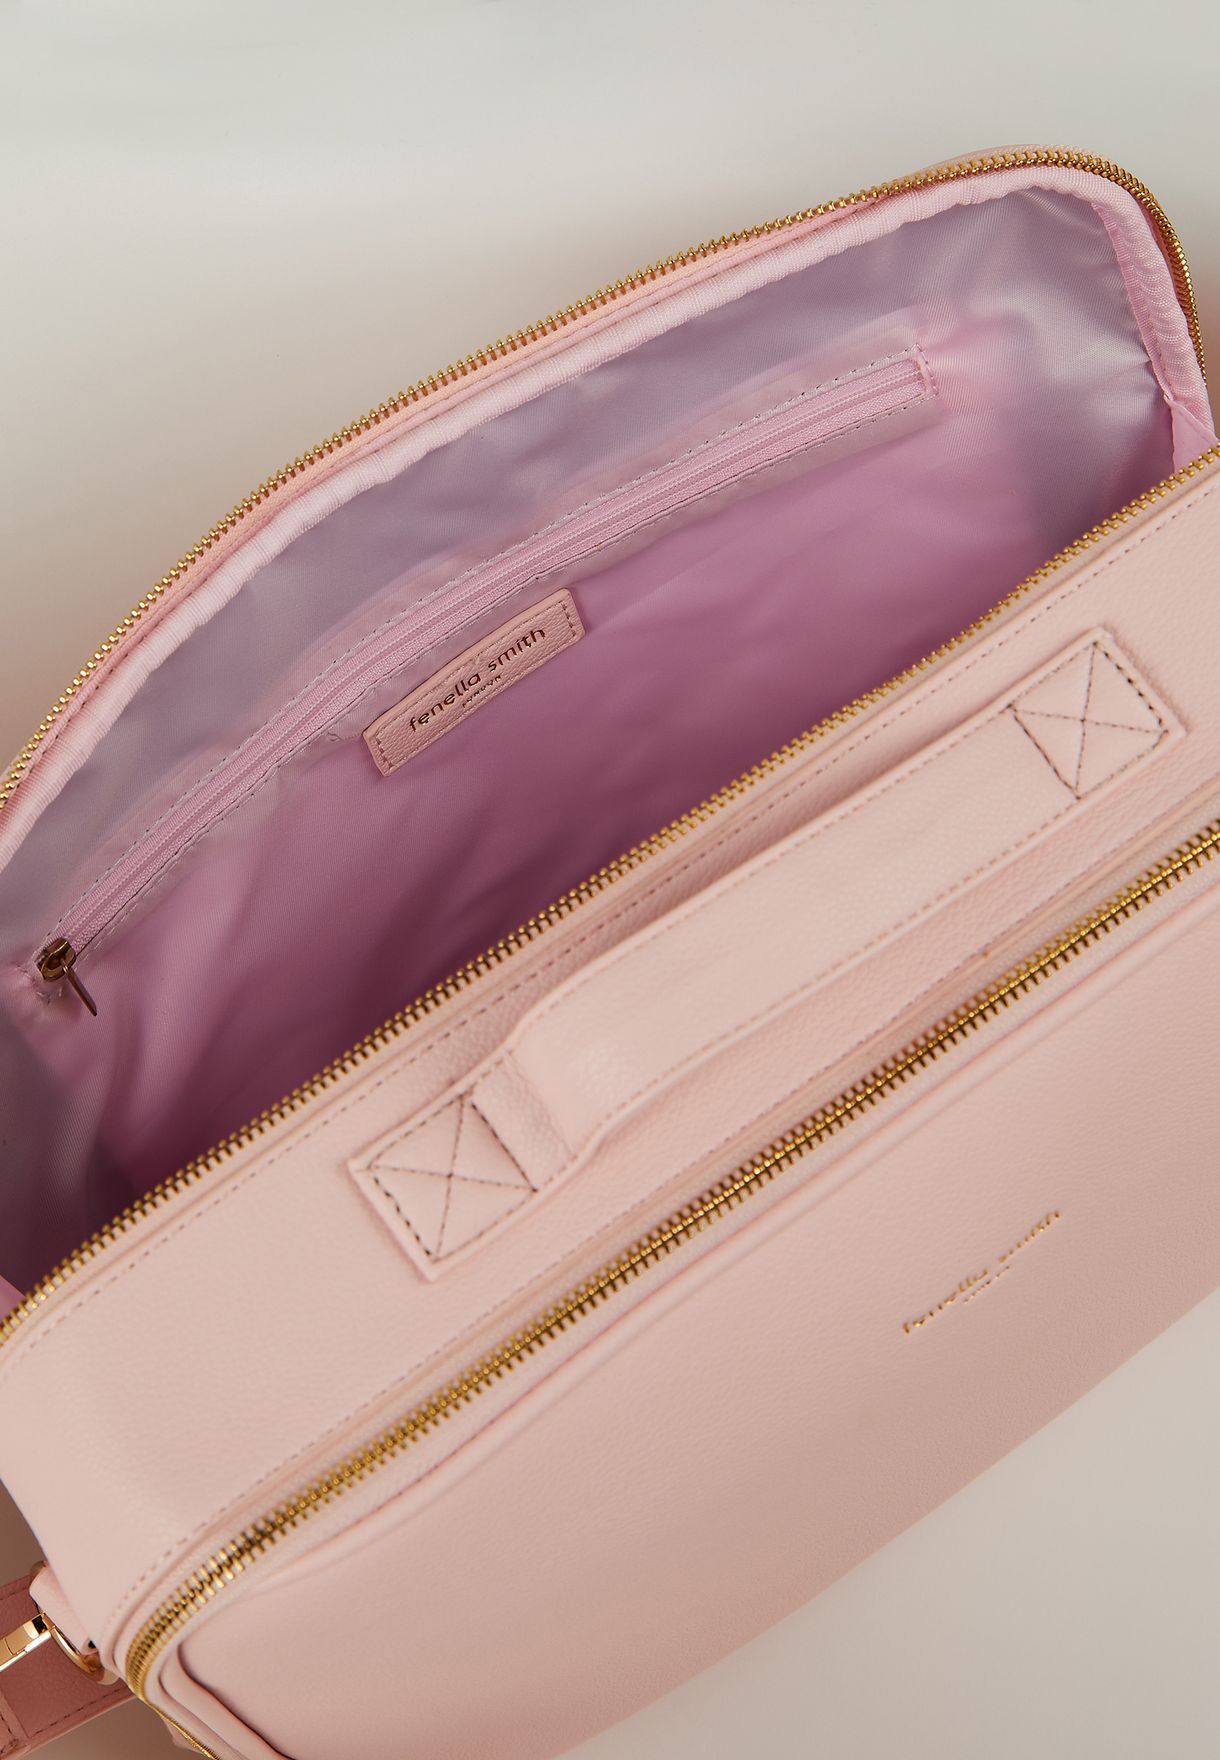 Pink Luca Laptop Bag